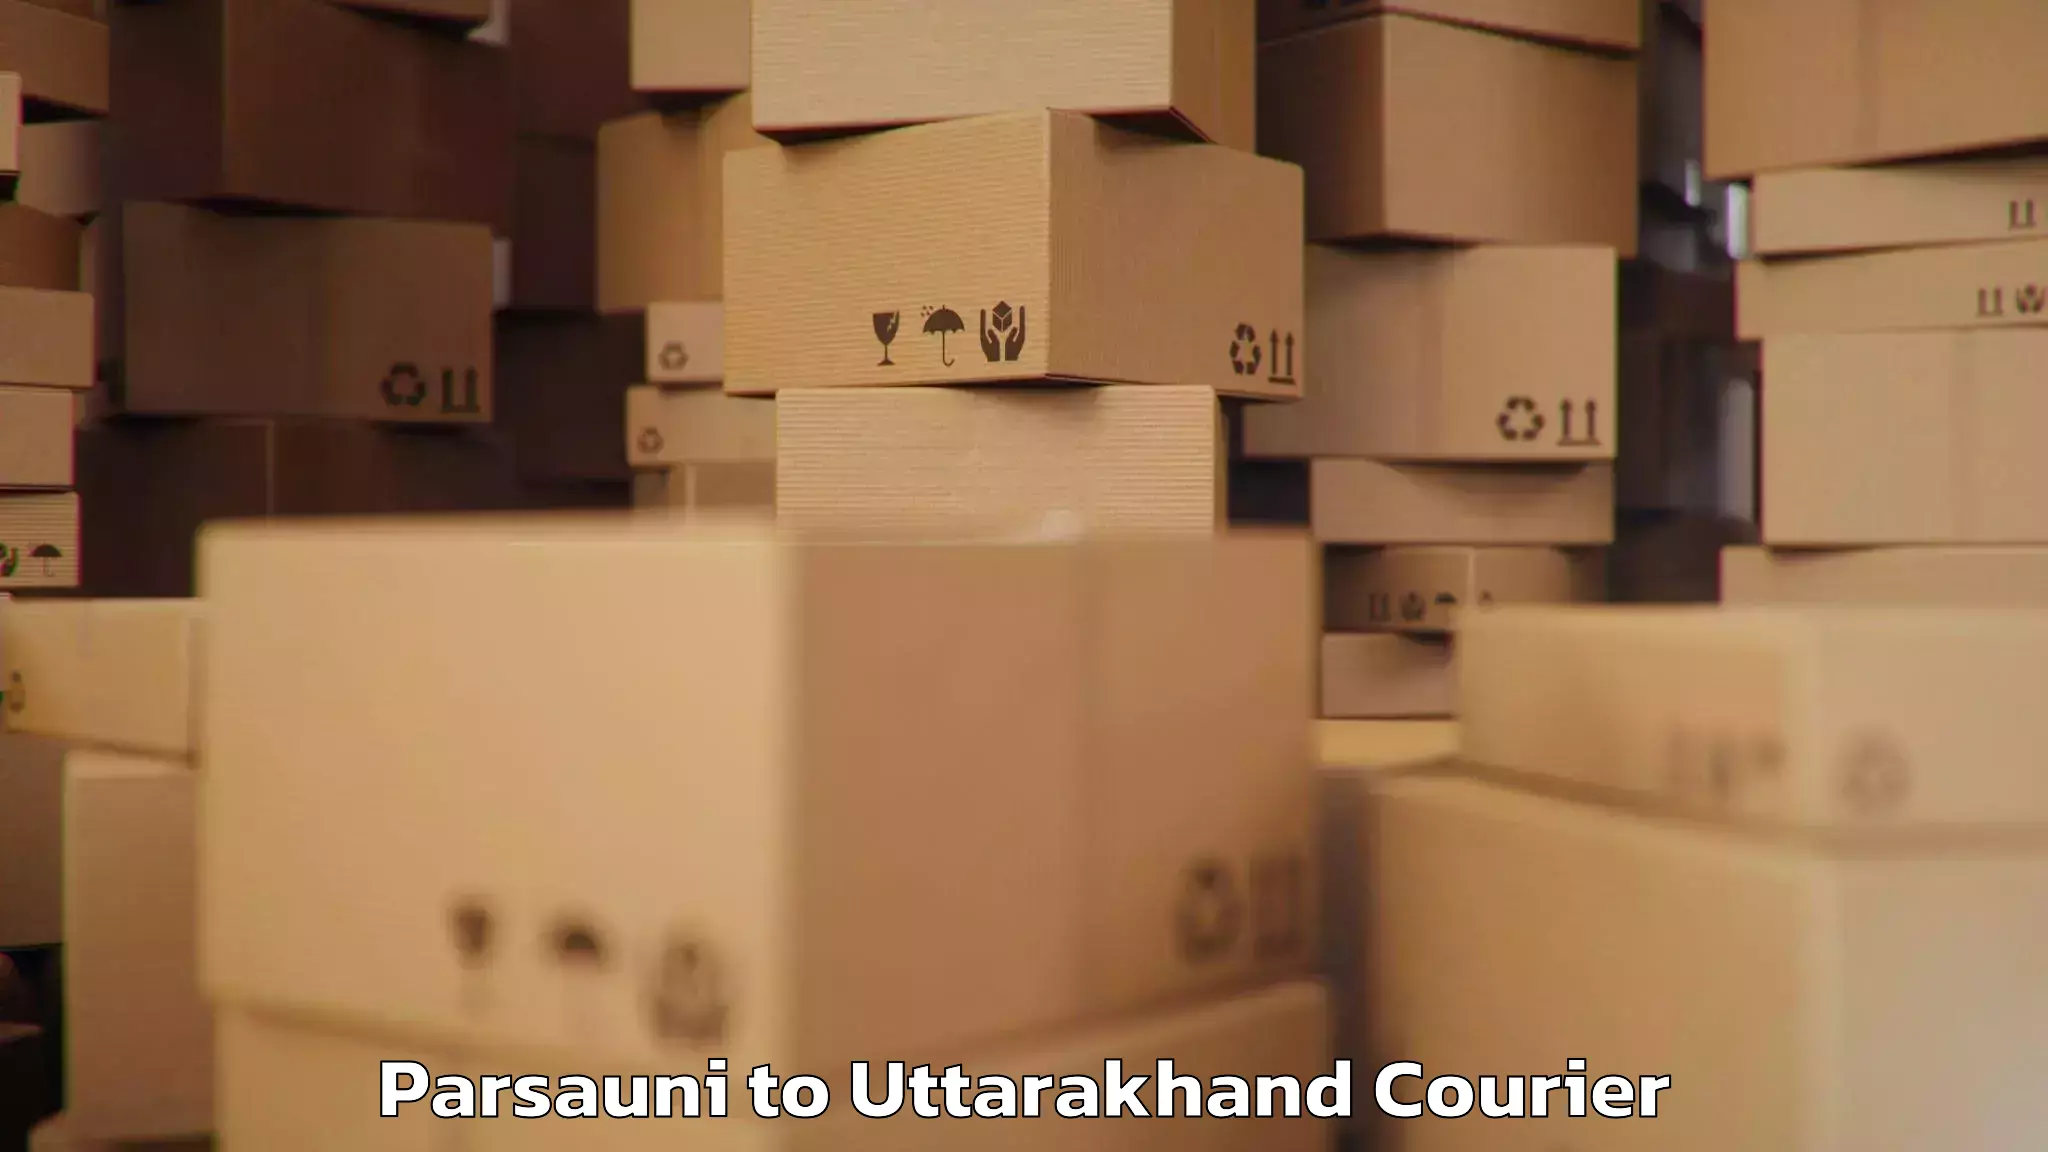 Baggage transport scheduler Parsauni to Uttarakhand